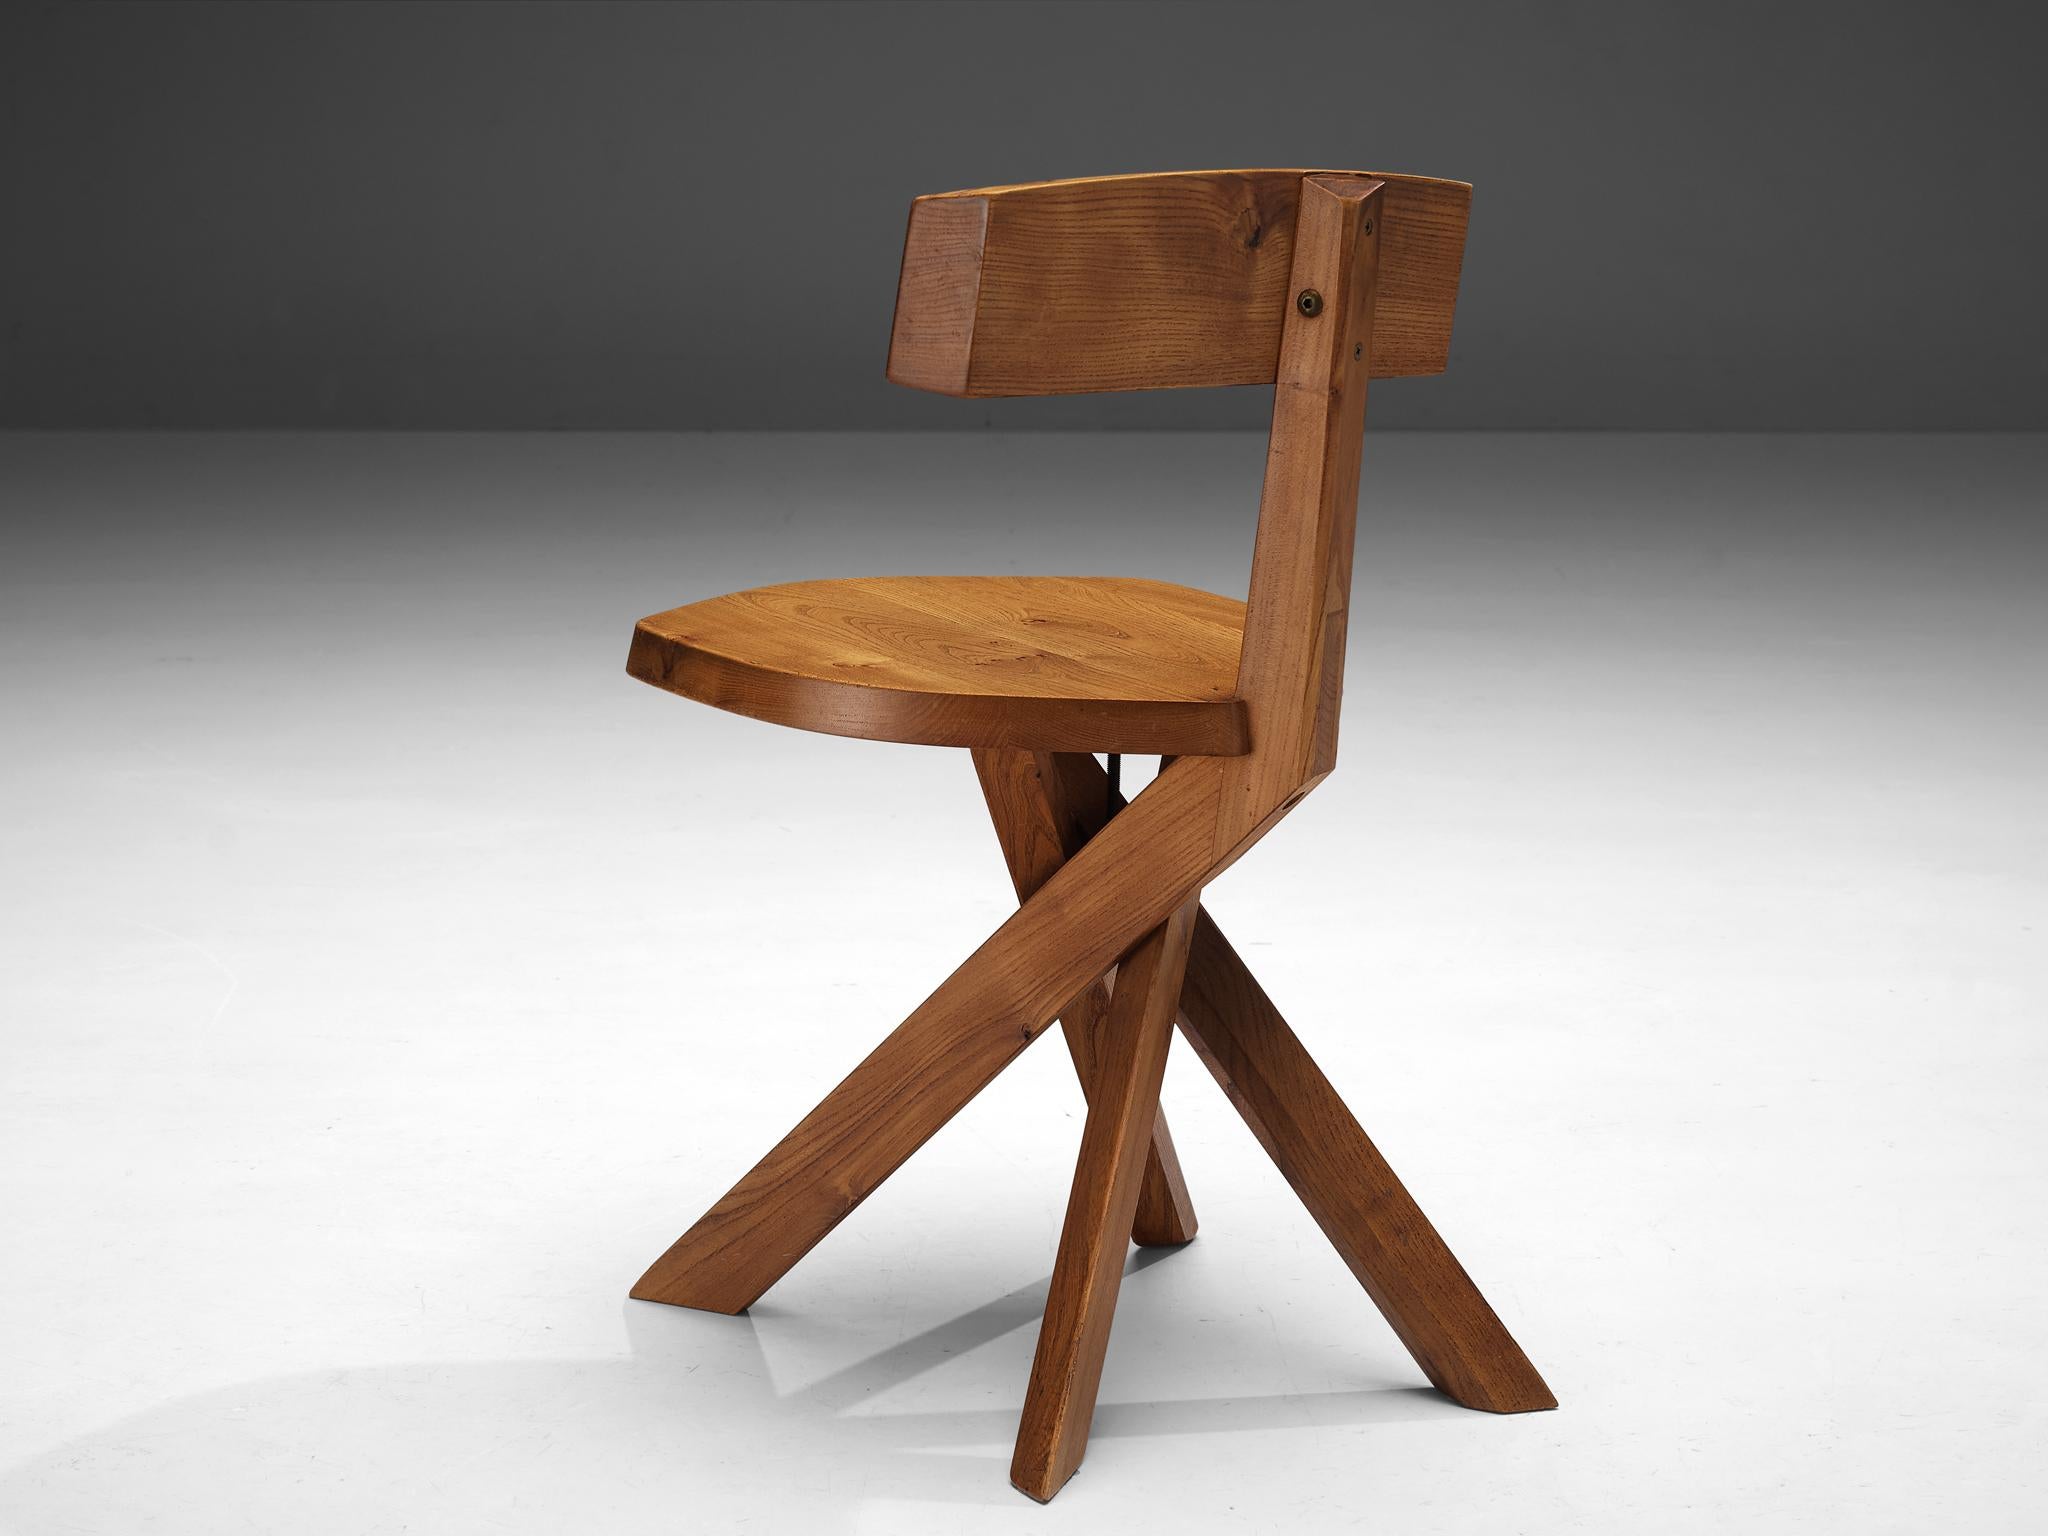 Pierre Chapo, chaise, modèle 'S34A', orme, France, circa 1973 

Ce modèle est une première édition, créée selon la méthodologie artisanale originale de Pierre Chapo. Cette chaise, modèle 'S34A', a été conçue vers 1973. Cette chaise asymétrique